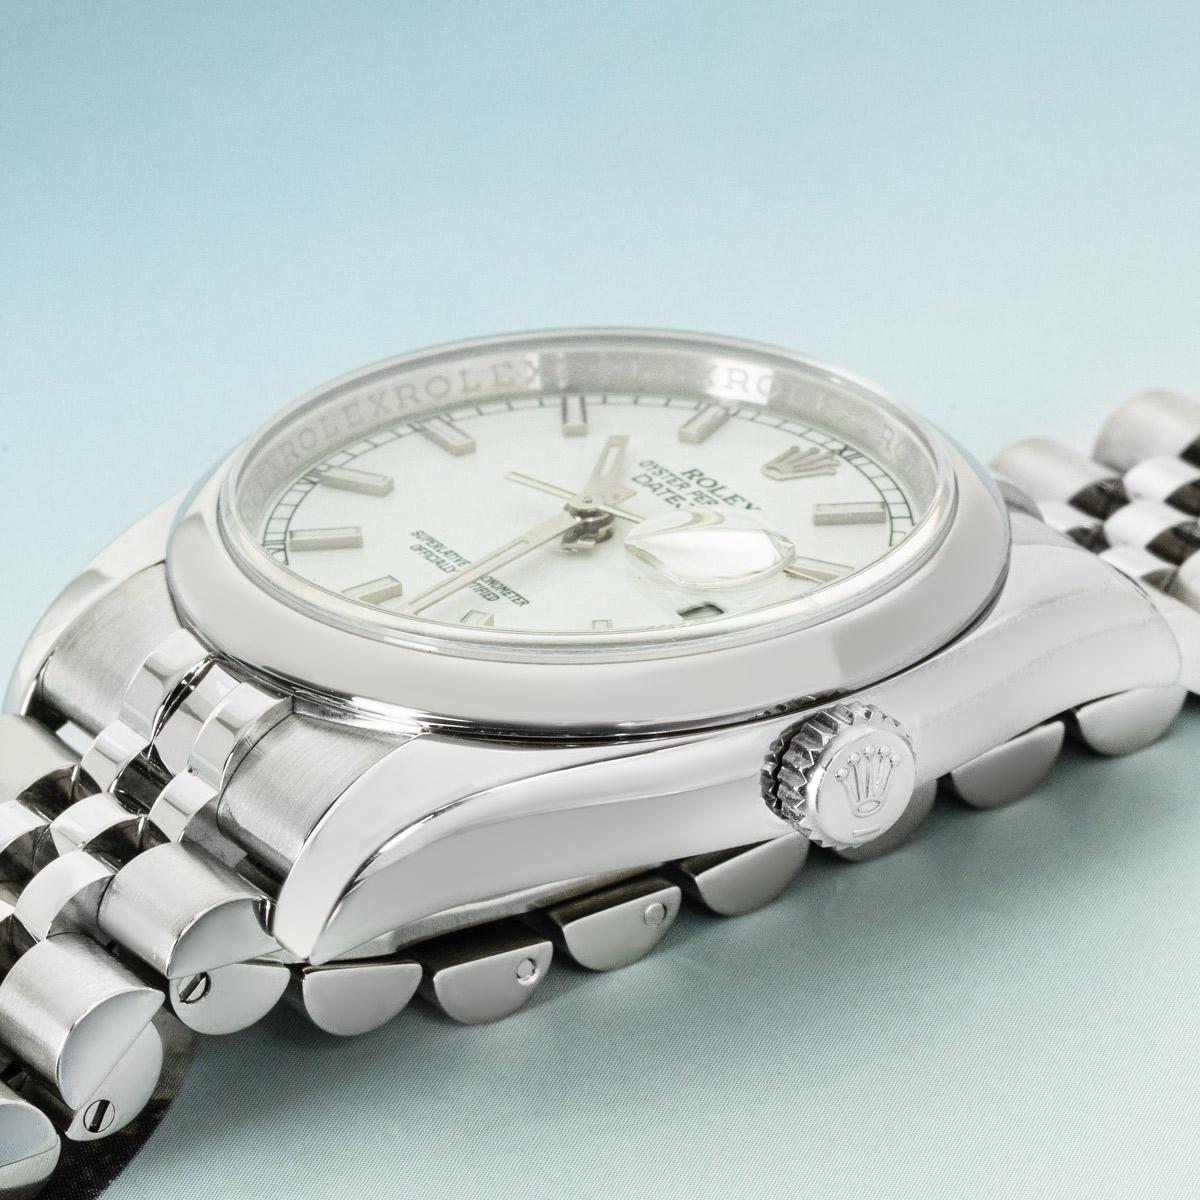 Eine 36-mm-Datejust aus Stahl von Rolex. Sie verfügt über ein weißes Zifferblatt mit aufgesetzten Indexen und eine glatte, feste Lünette aus Edelstahl. Ausgestattet mit einem Saphirglas und einem automatischen Uhrwerk mit Automatikaufzug. Die Uhr